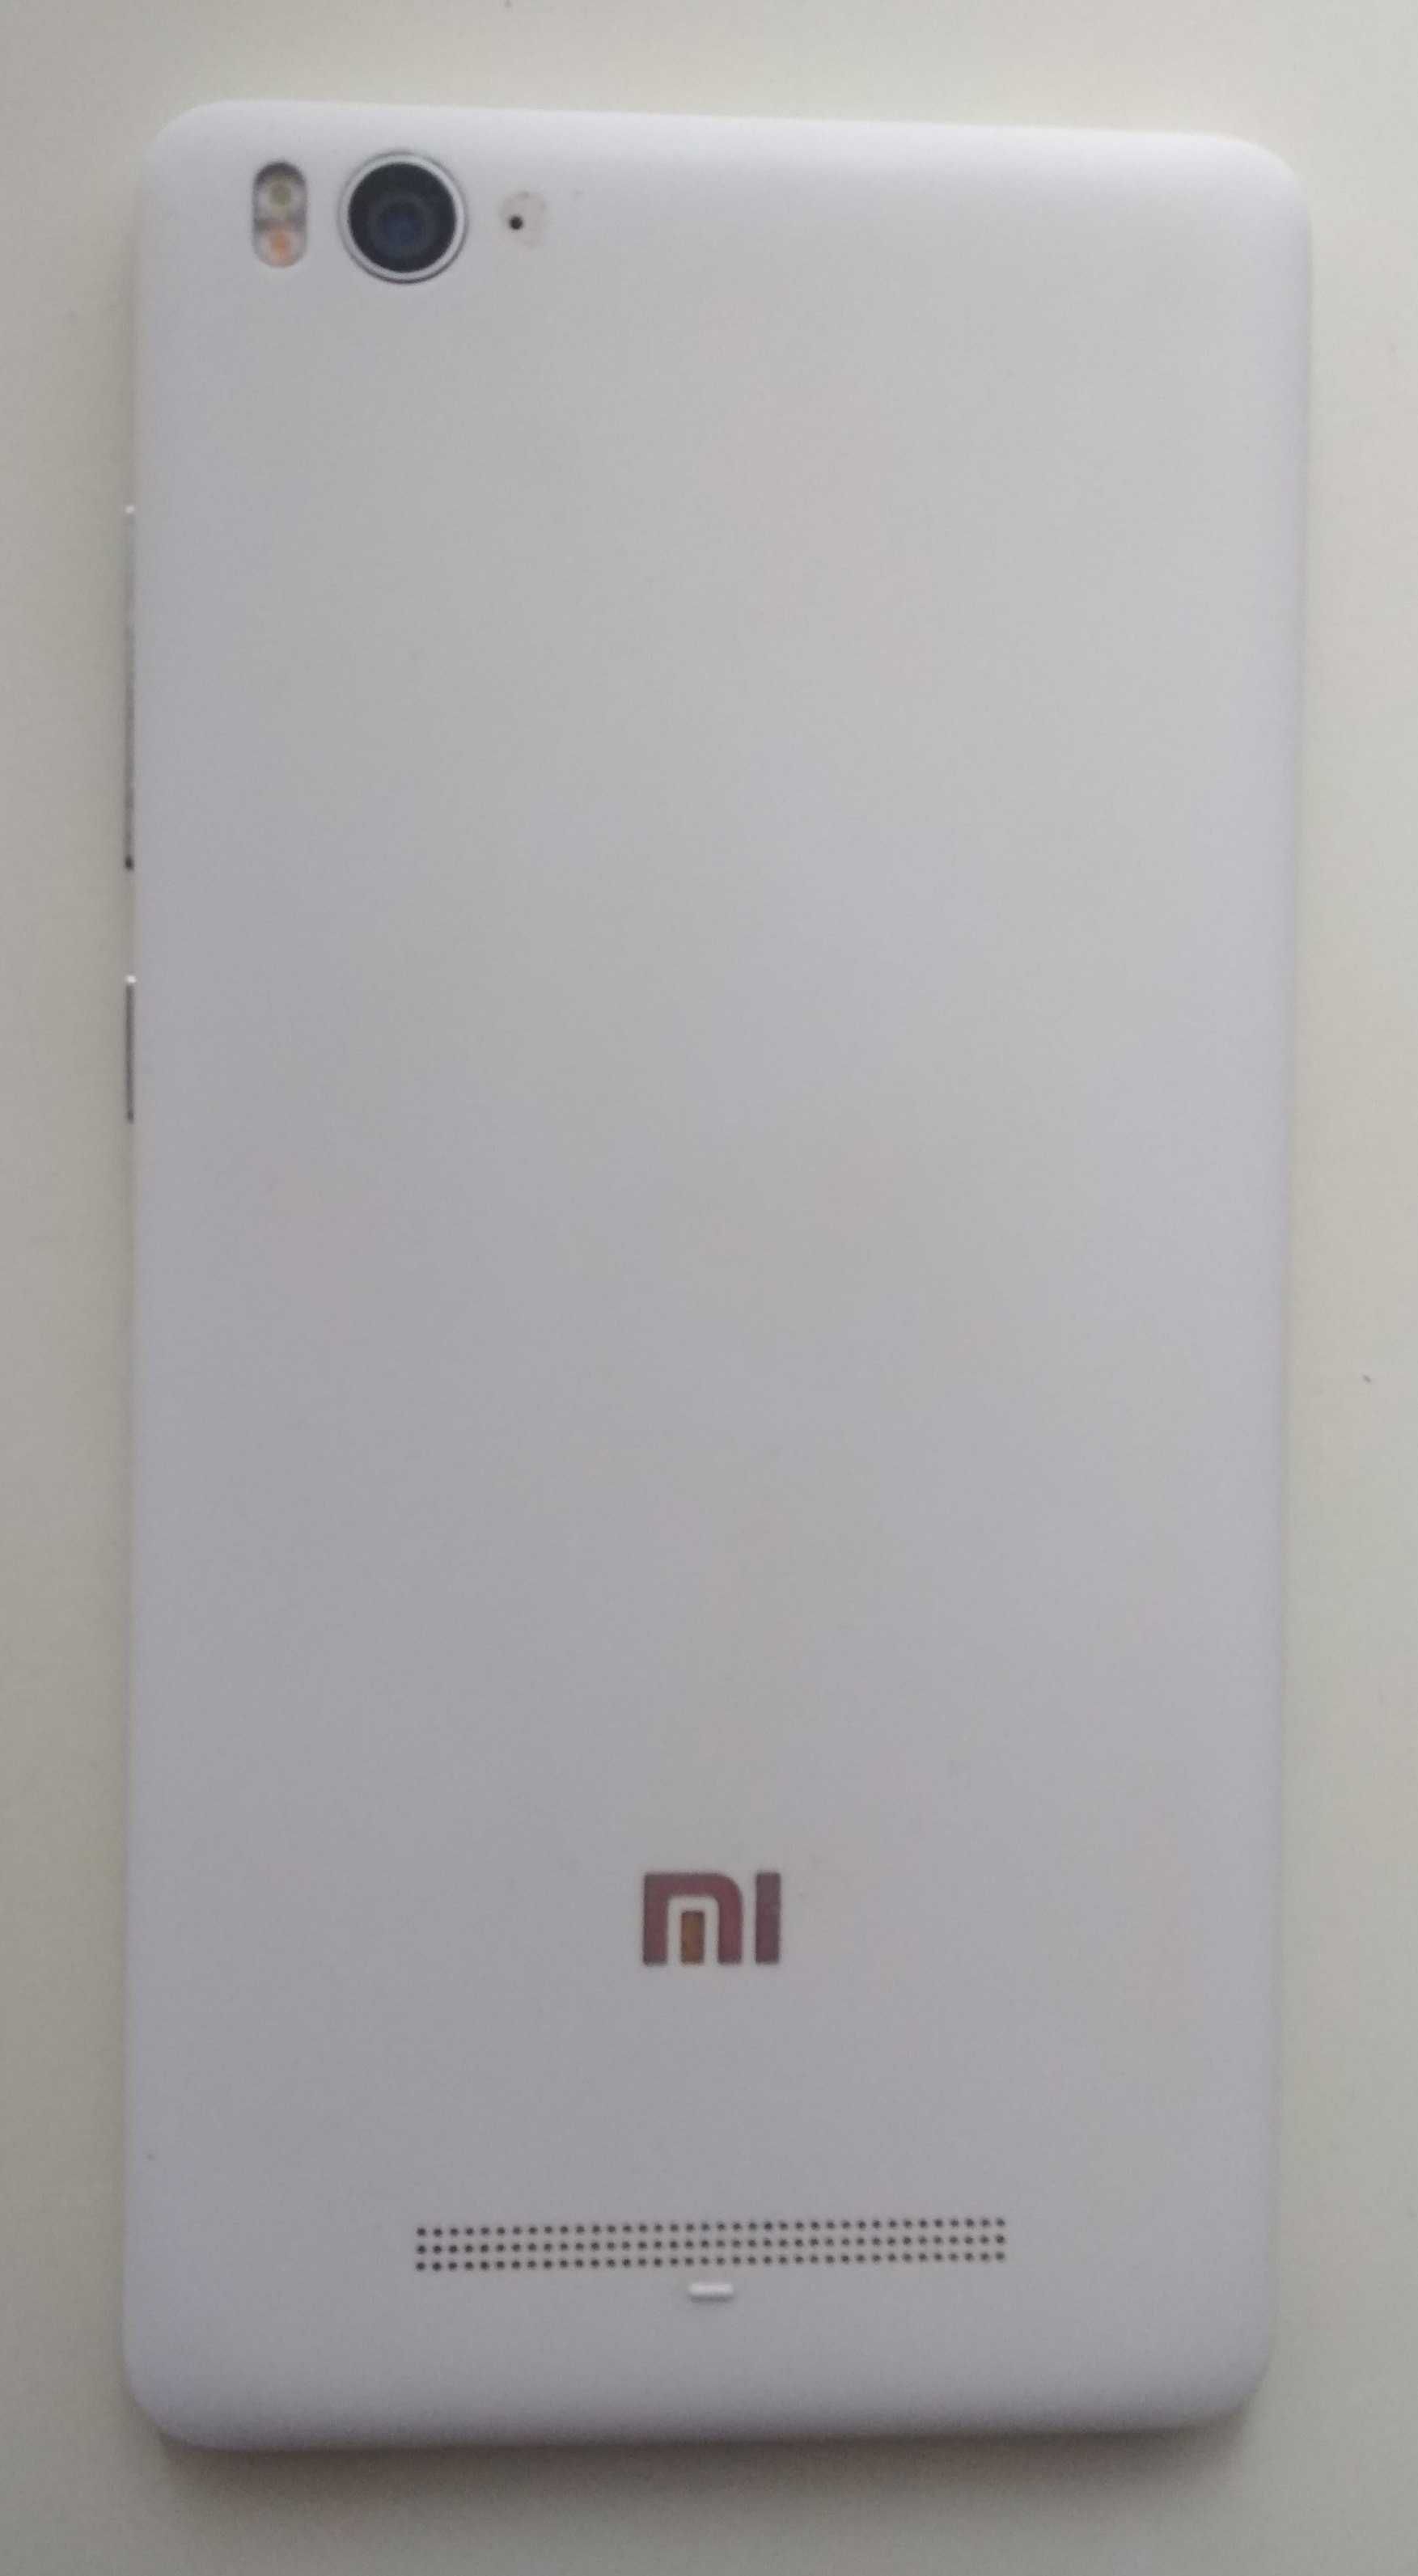 Двухстандартный смартфон Xiaomi Mi-4c (GSM + GSM или GSM + CDMA)